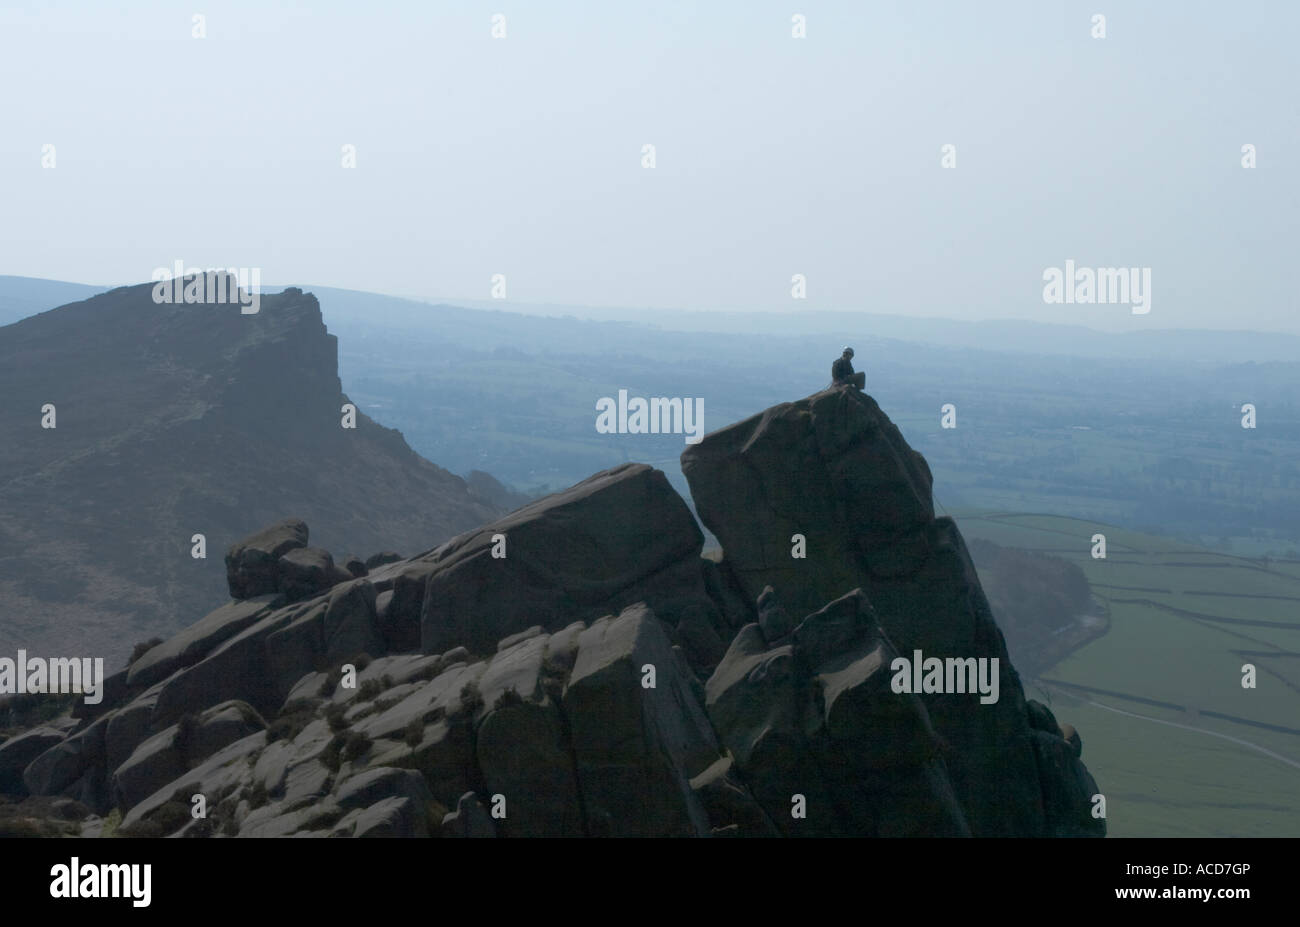 Lone scalatore si trova sulla cima di una collina con una nuvola di gallina in background Foto Stock